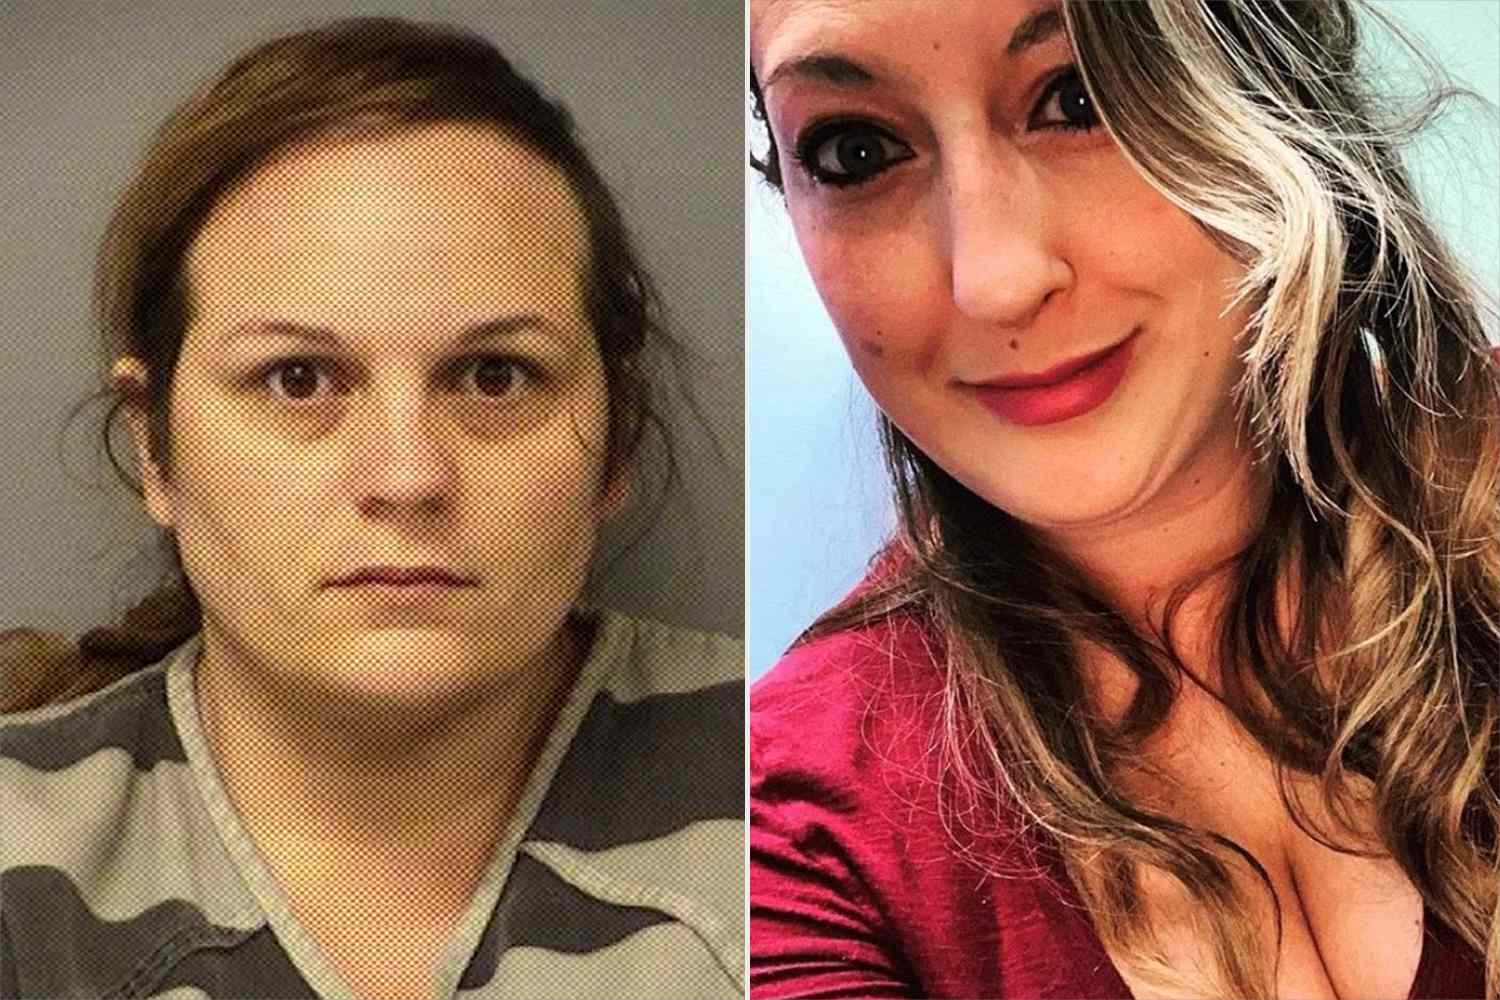 टेक्सास की महिला ने बेस्ट फ्रेंड का गला घोंटने का आरोप लगाया, फिर उसकी नवजात बच्ची को चुराने के लिए दोषी ठहराए जाने की उम्मीद